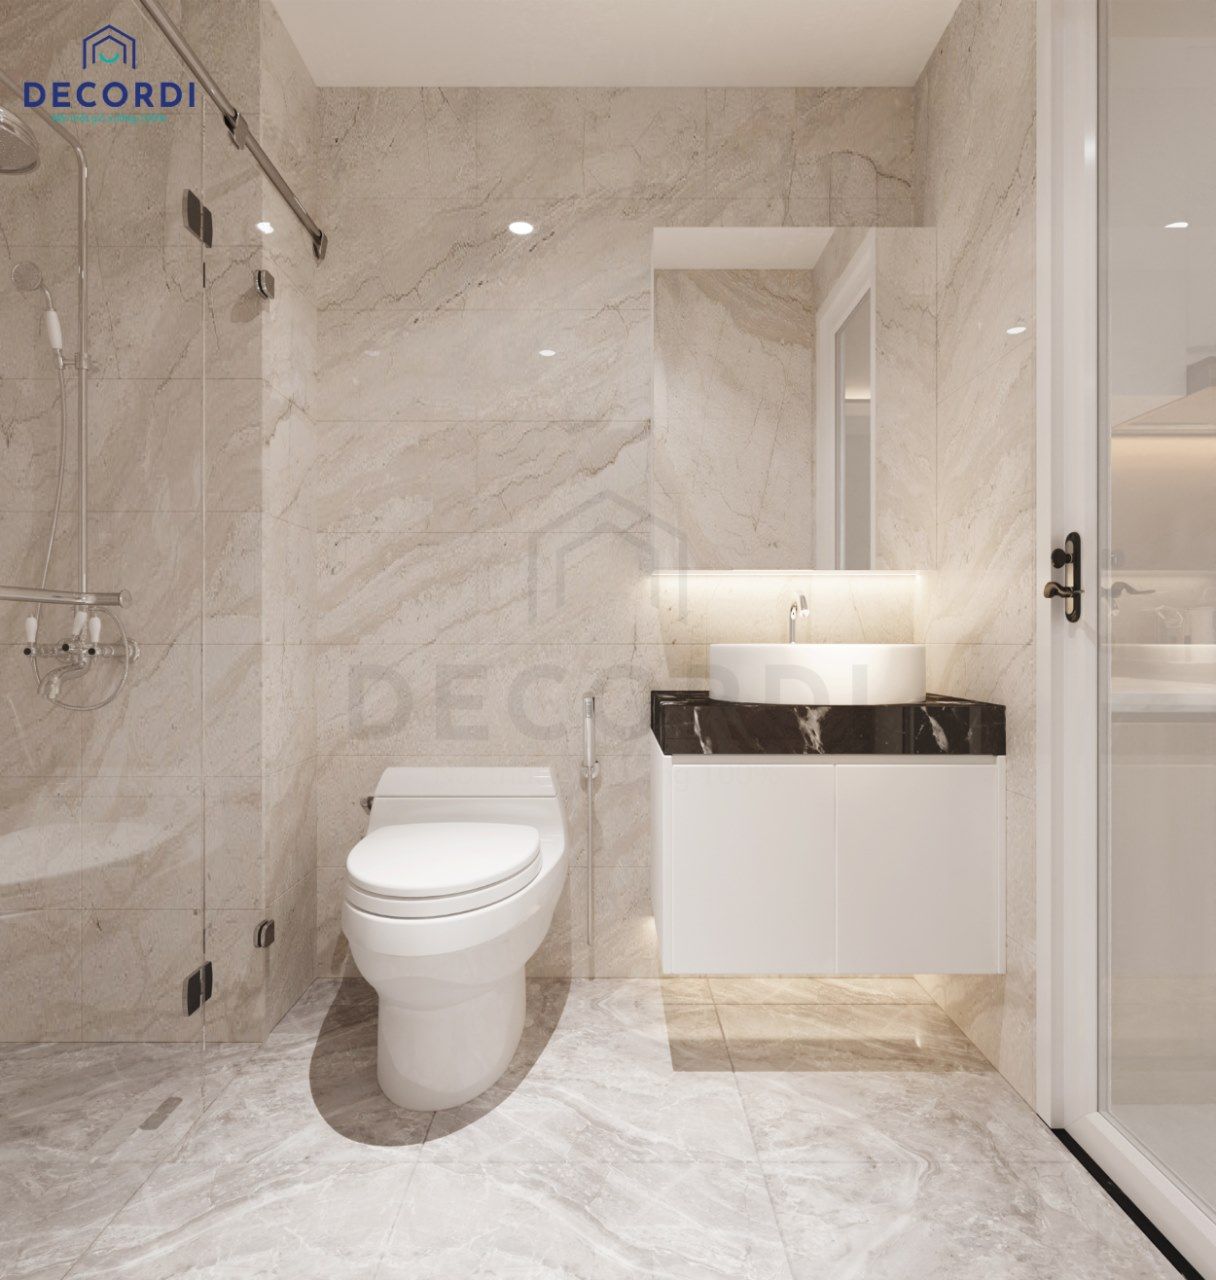 Thiết kế nhà vệ sinh được ốp hoàn toàn bằng gạch sáng màu sạch sẽ, nội thất hiện đại